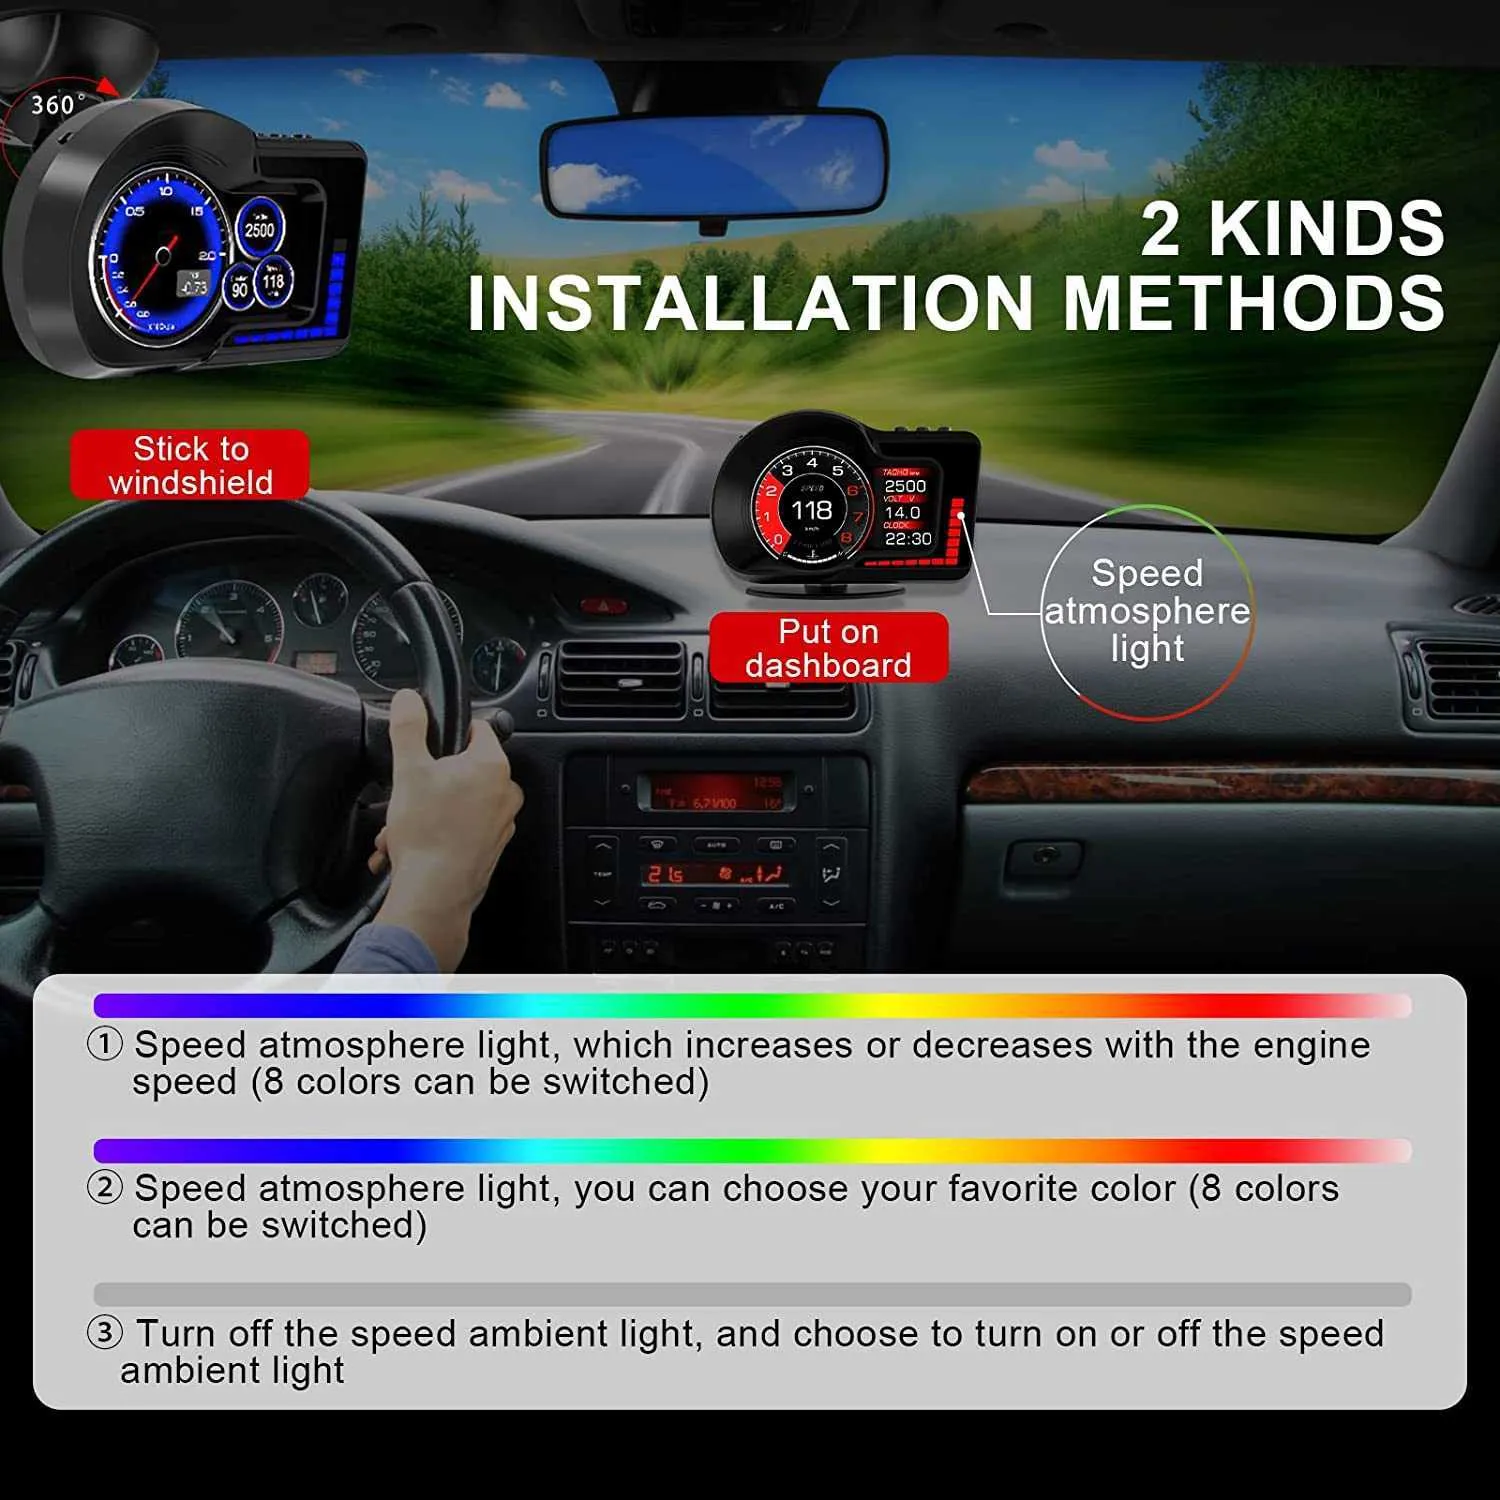 Jual Head Up Display HUD GPS OBD2 Speedometer Gauge Digital Car